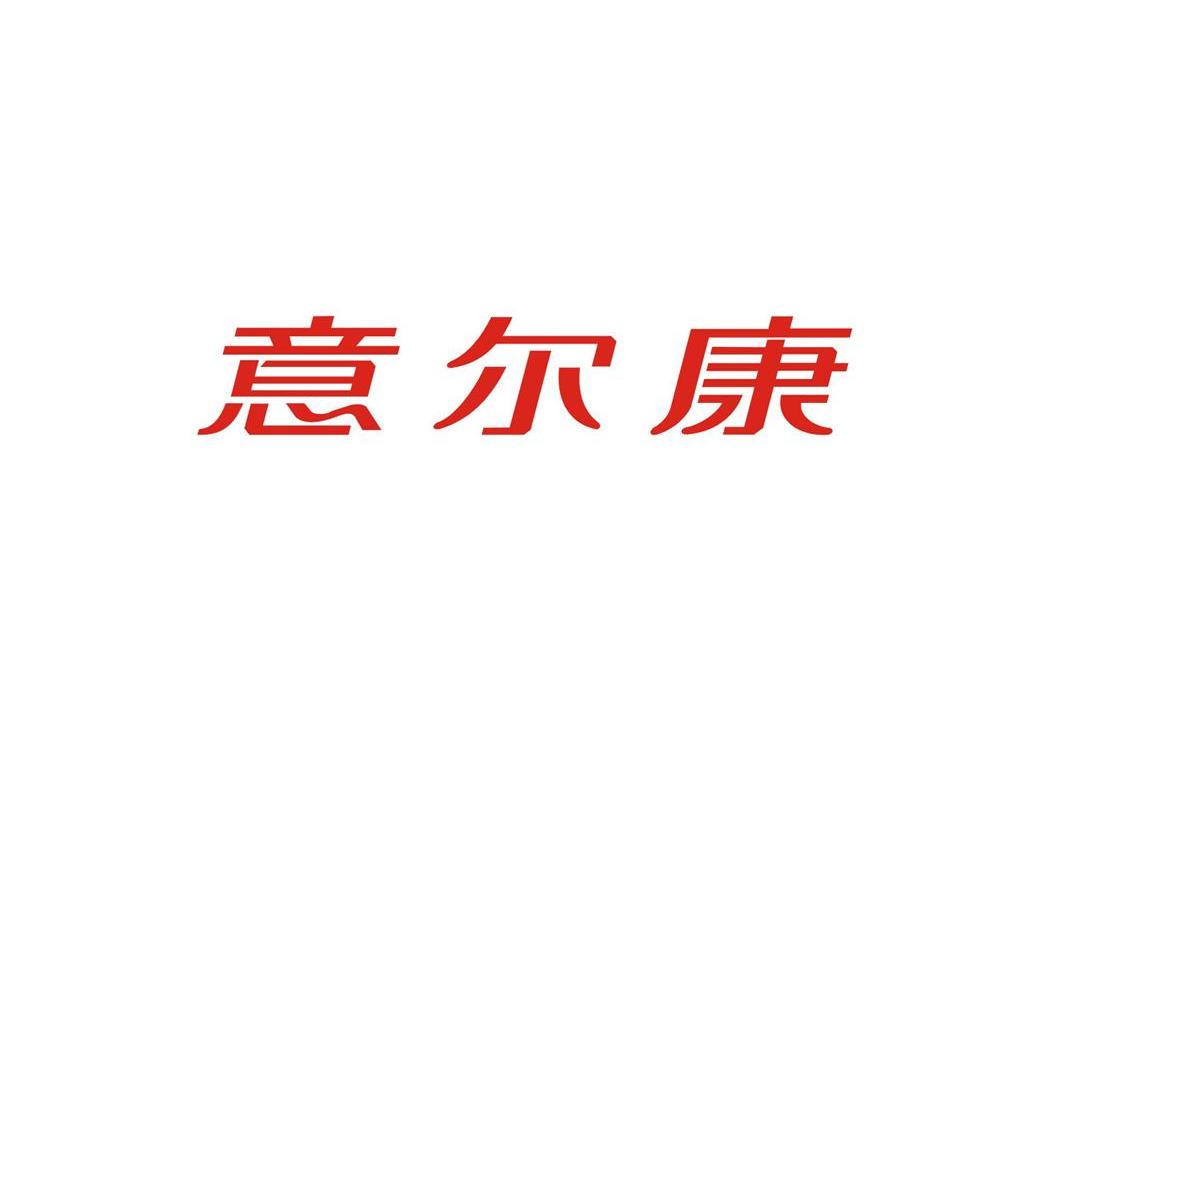 意尔康标志图片 logo图片